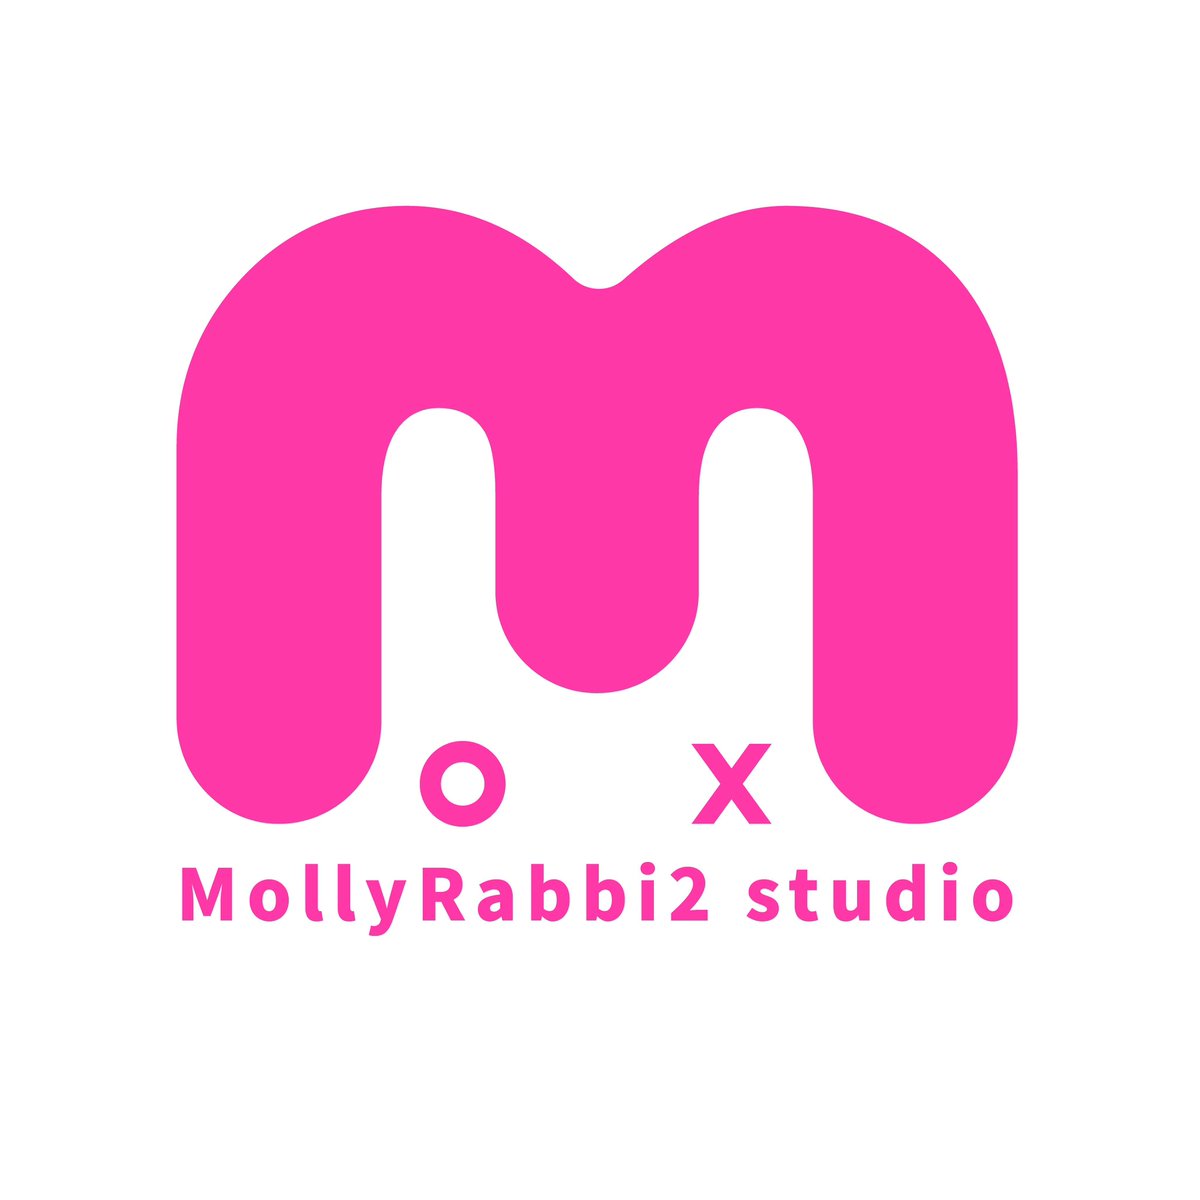 logo redesign～MollyRabbi2 studio～🐰

#logo #logodesigner #logodesigns #logoinspirations #logoinspiration #logomaker #logodesinger #branding #brandingdesign